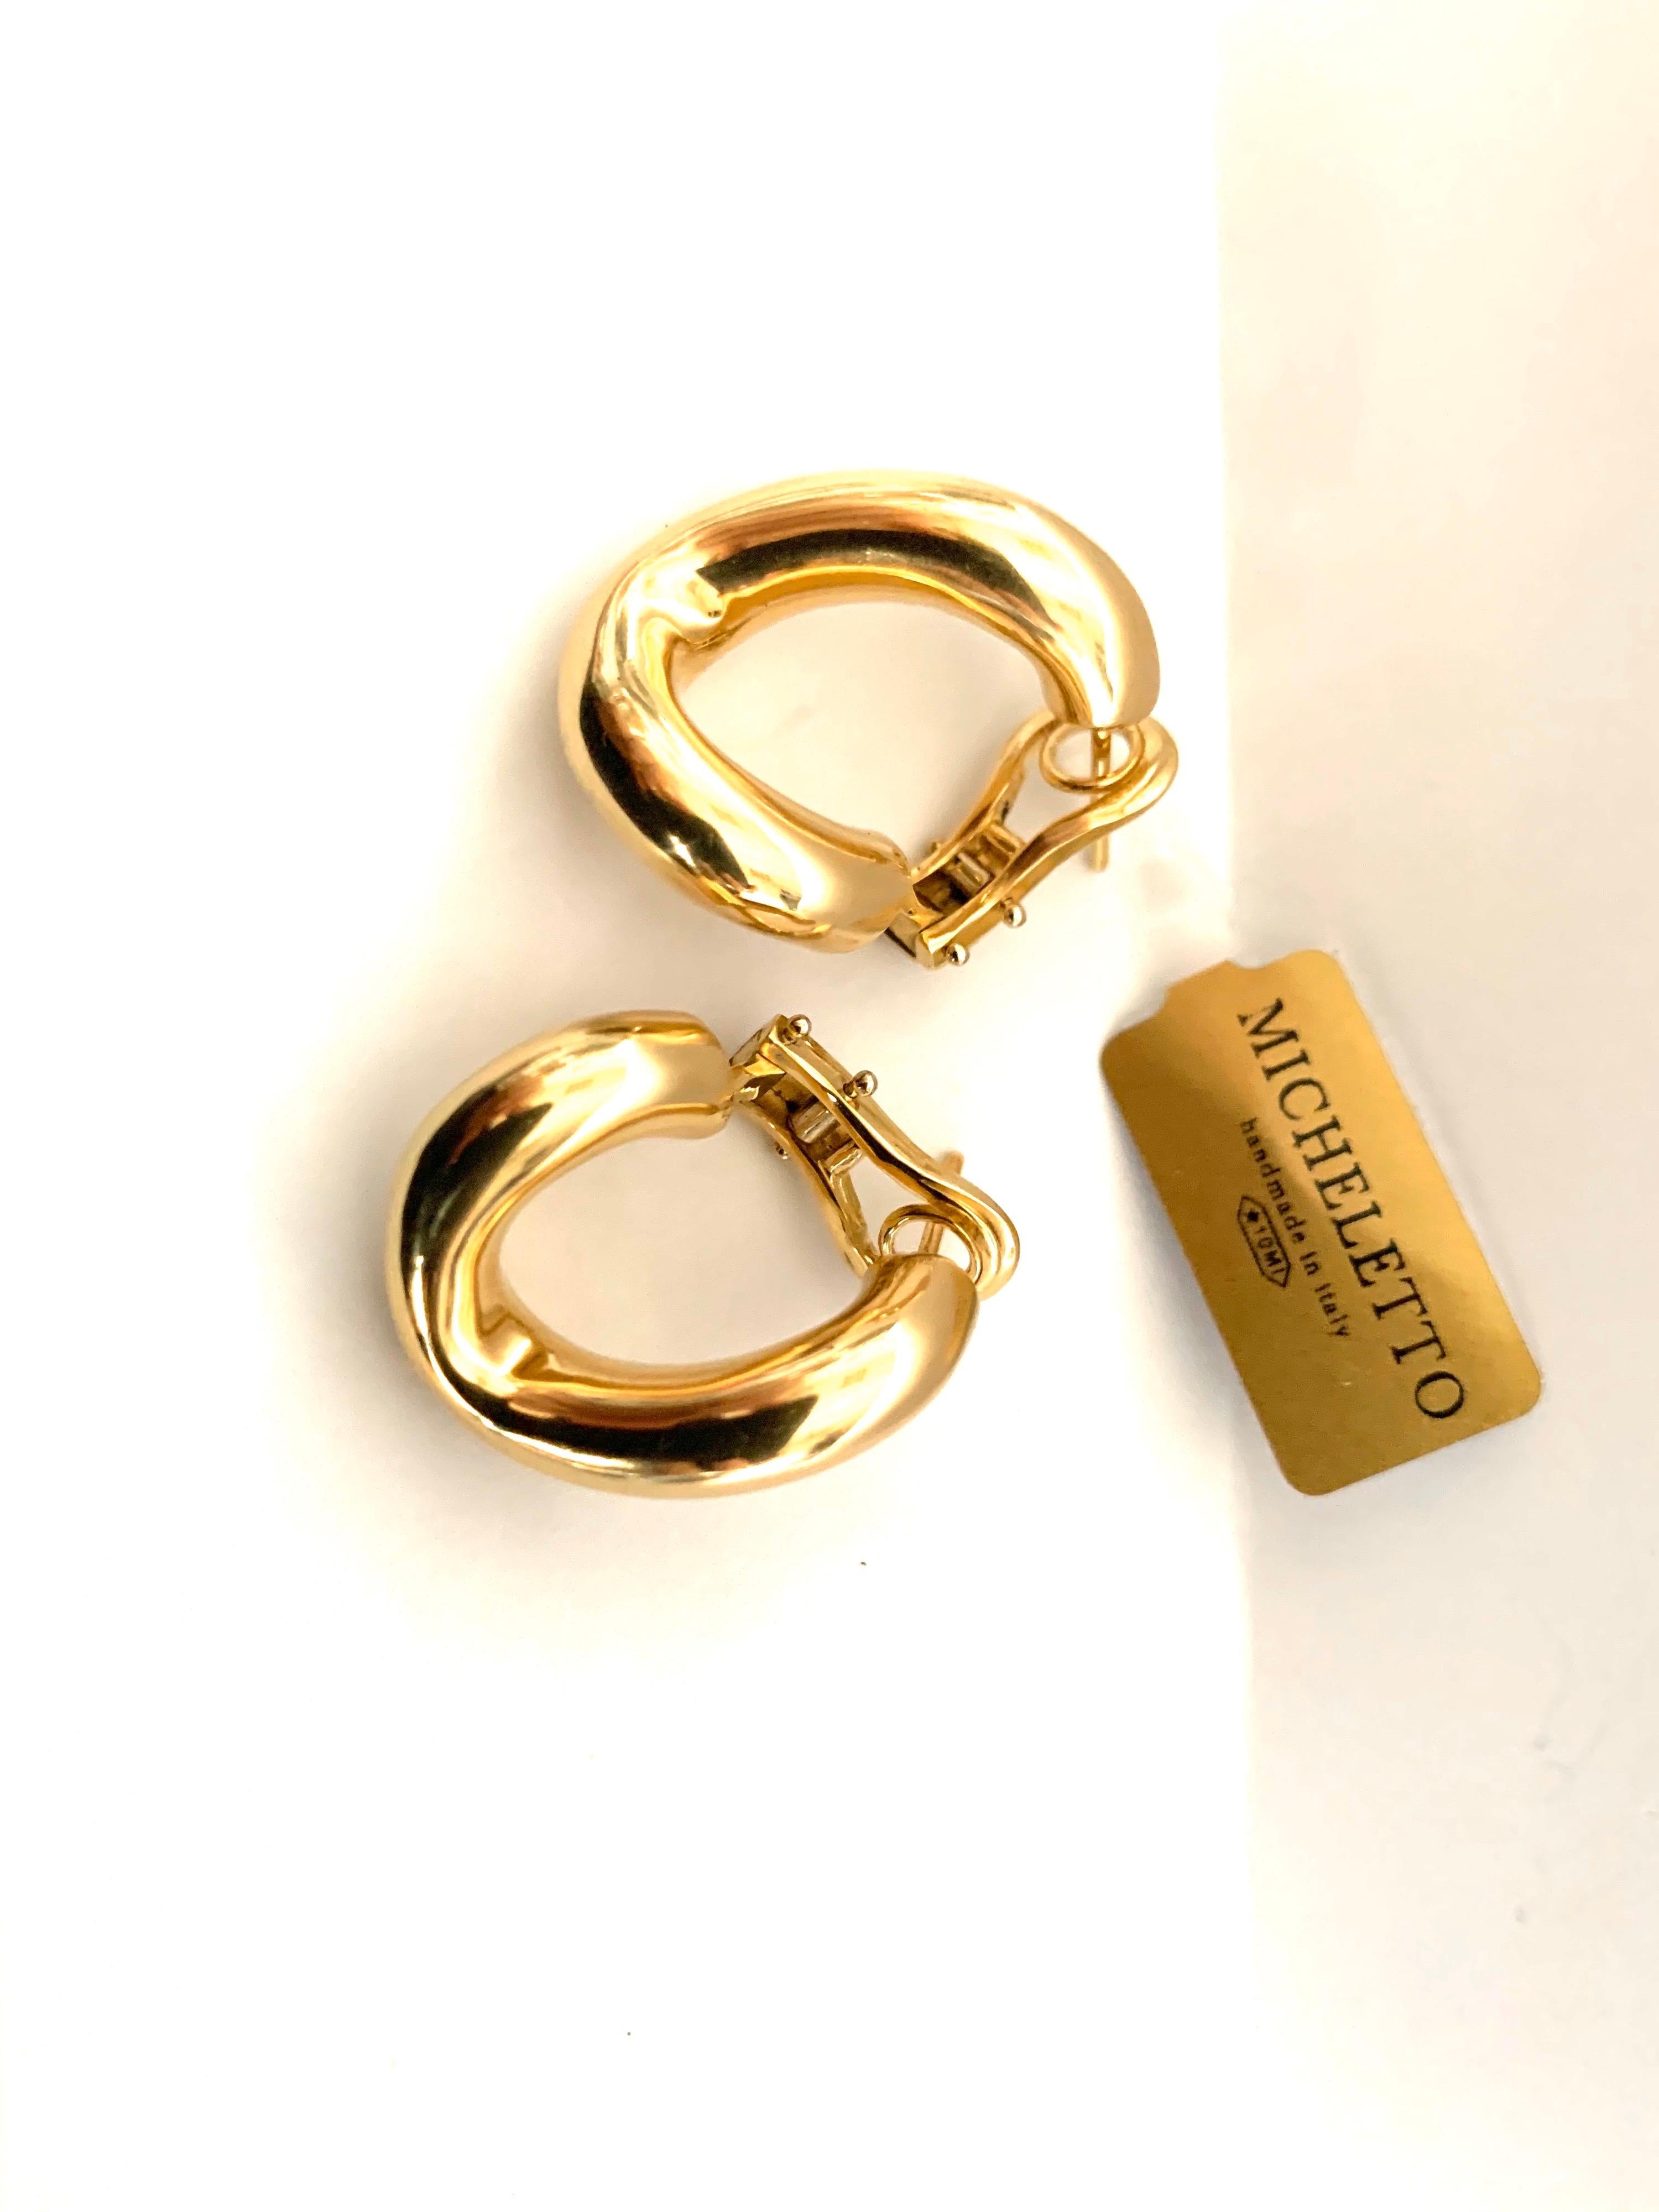 Klassisches Paar Groumette-Ohrringe aus 18 kt Gelbgold 
Dies ist die ikonische Kollektion von Micheletto.

das Gesamtgewicht des Goldes beträgt 9,6

BRIEFMARKE: 10 MI ITALIEN 750

Der vollständige Satz ist verfügbar.
Das Armband kann